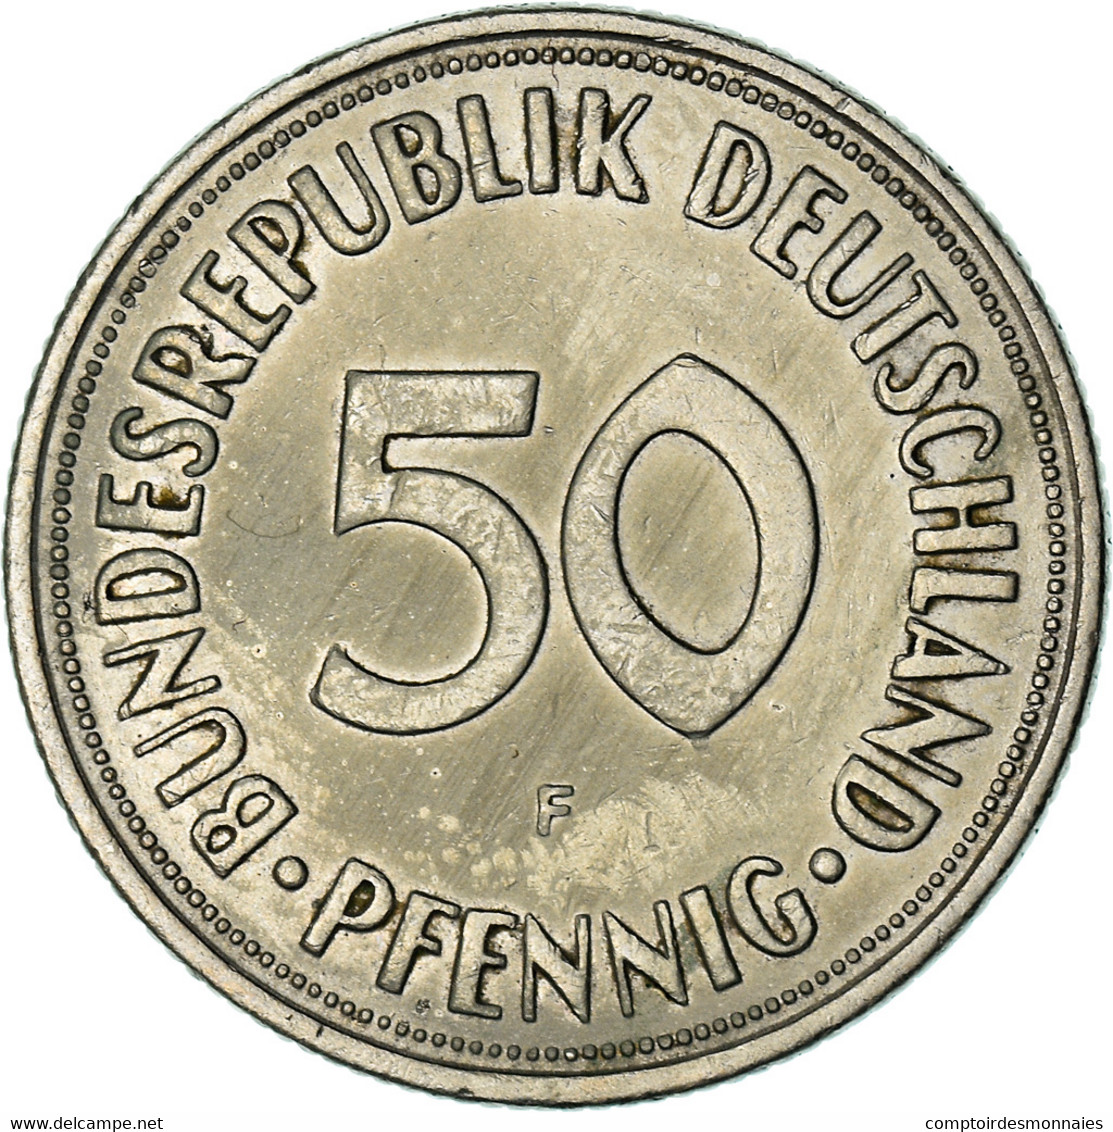 Monnaie, République Fédérale Allemande, 50 Pfennig, 1968, Stuttgart, TTB - 50 Pfennig